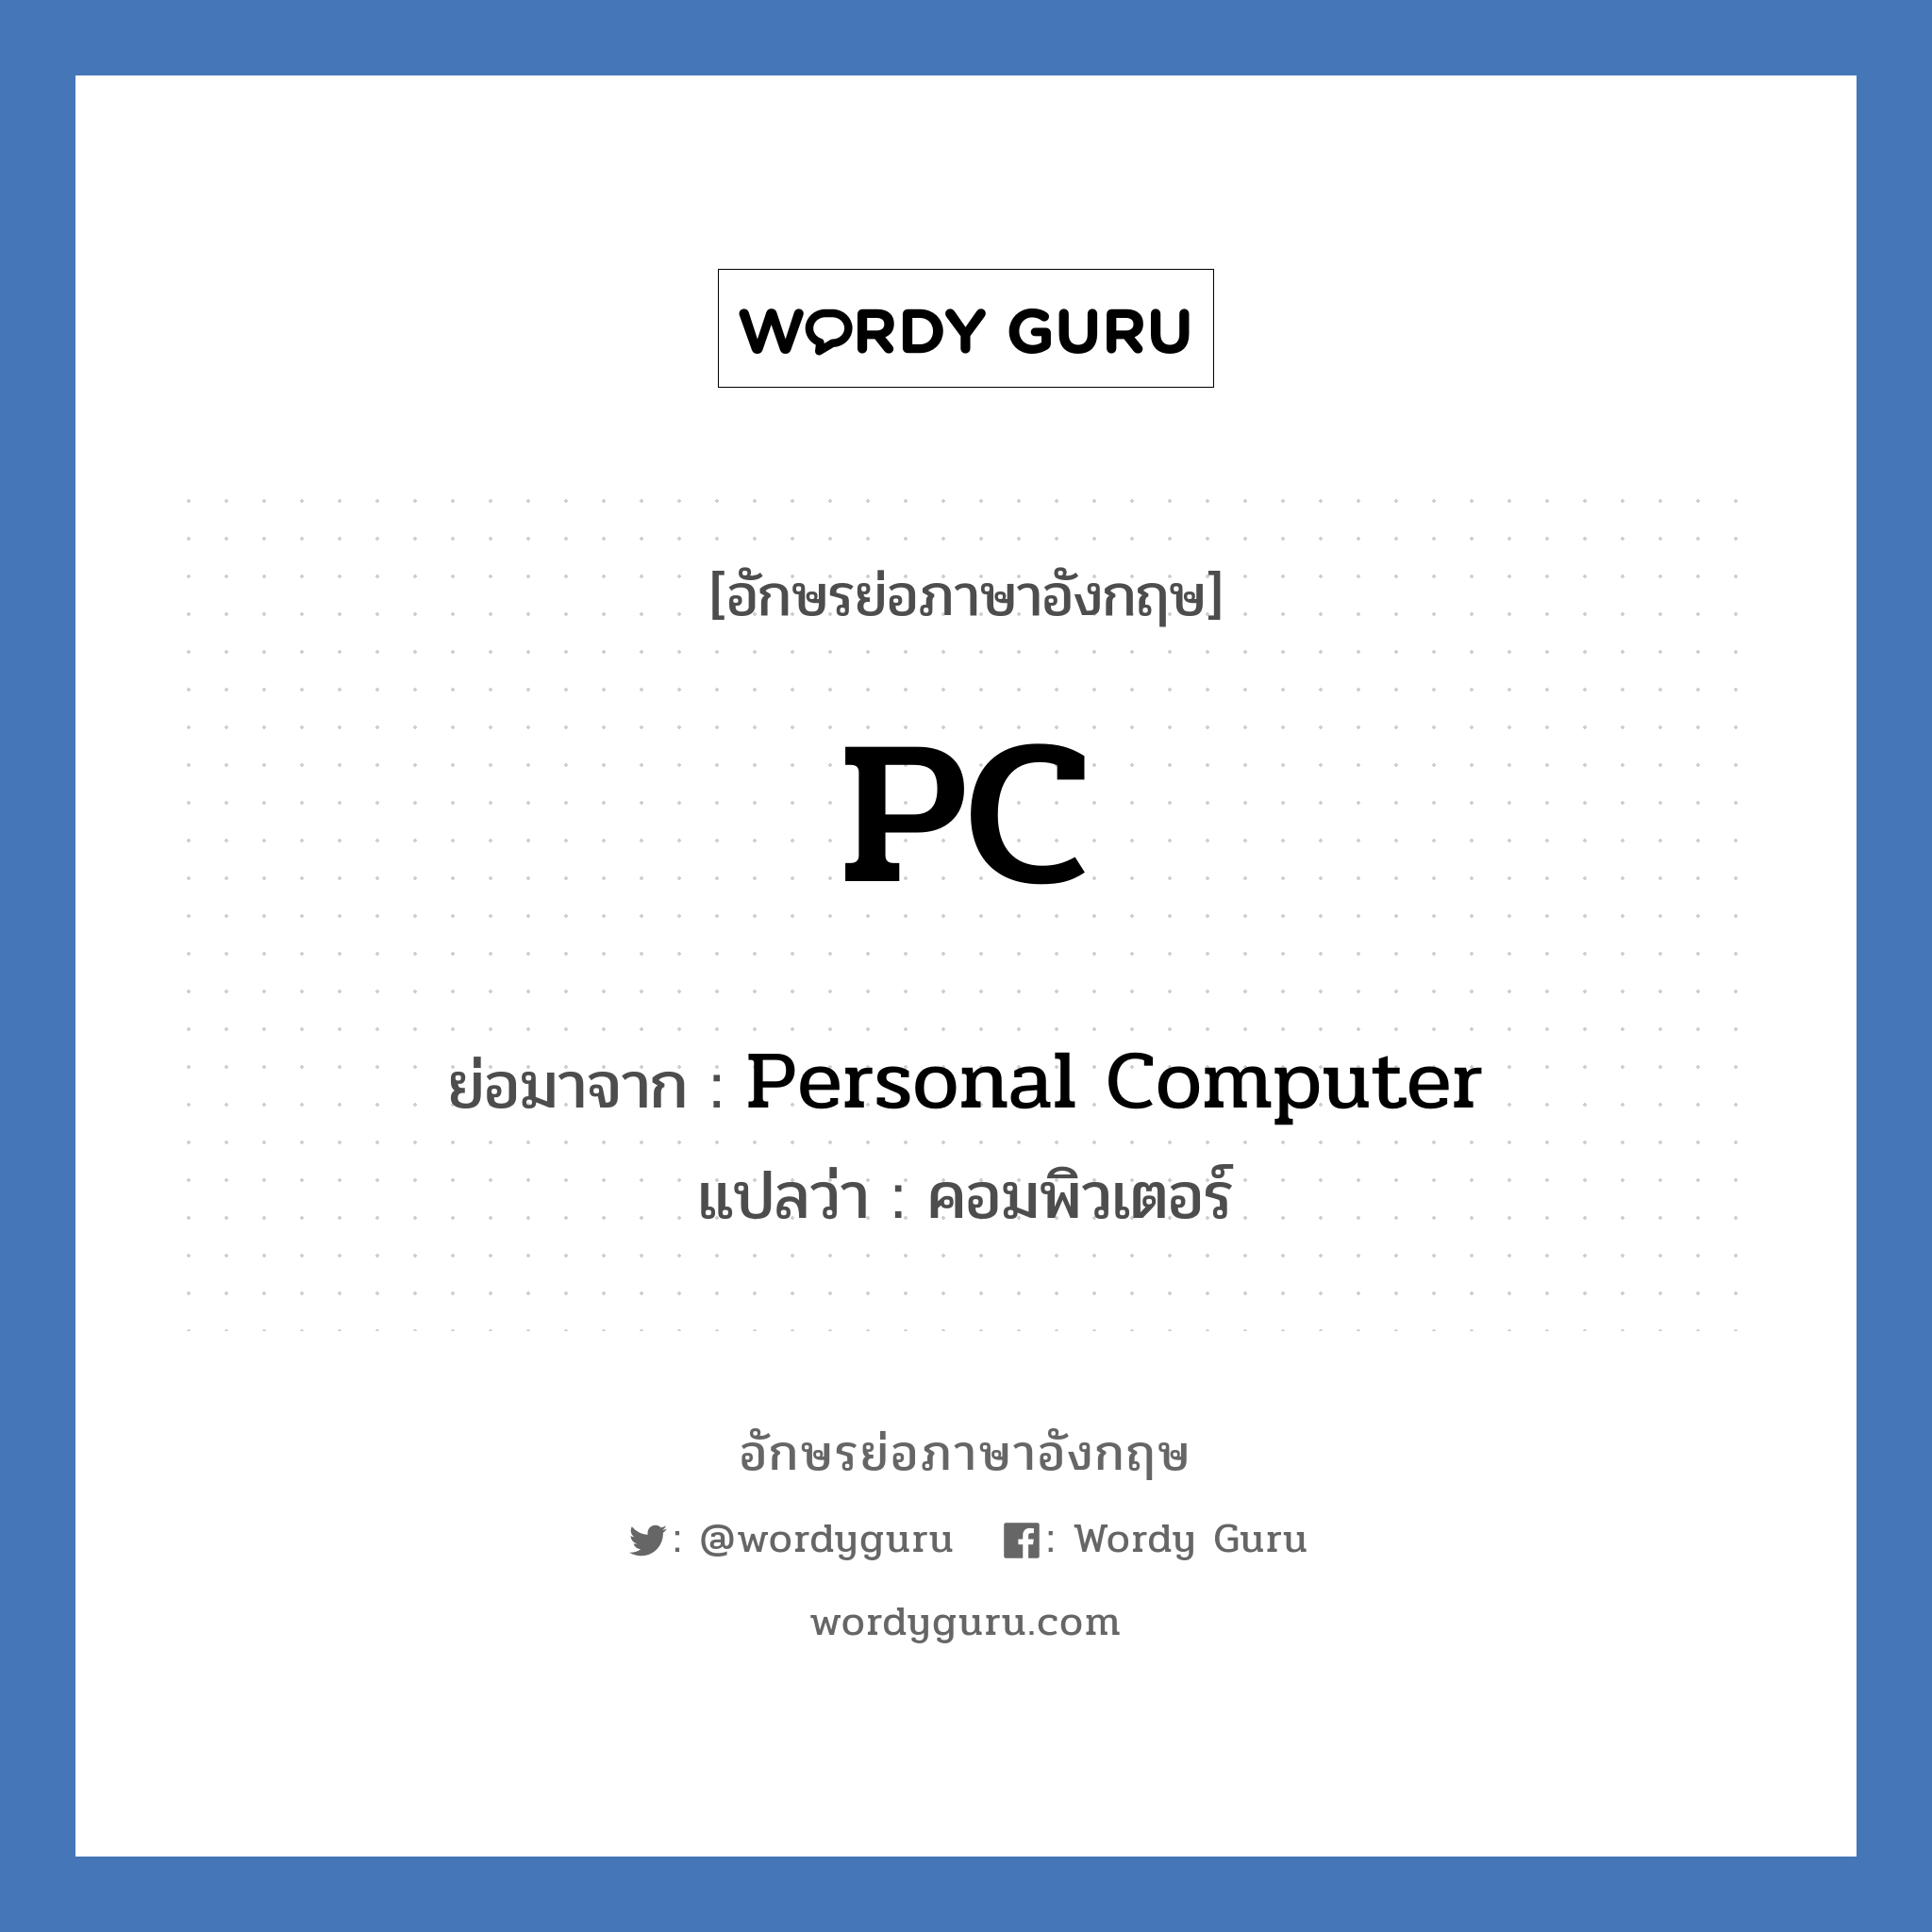 PC ย่อมาจาก? แปลว่า?, อักษรย่อภาษาอังกฤษ PC ย่อมาจาก Personal Computer แปลว่า คอมพิวเตอร์